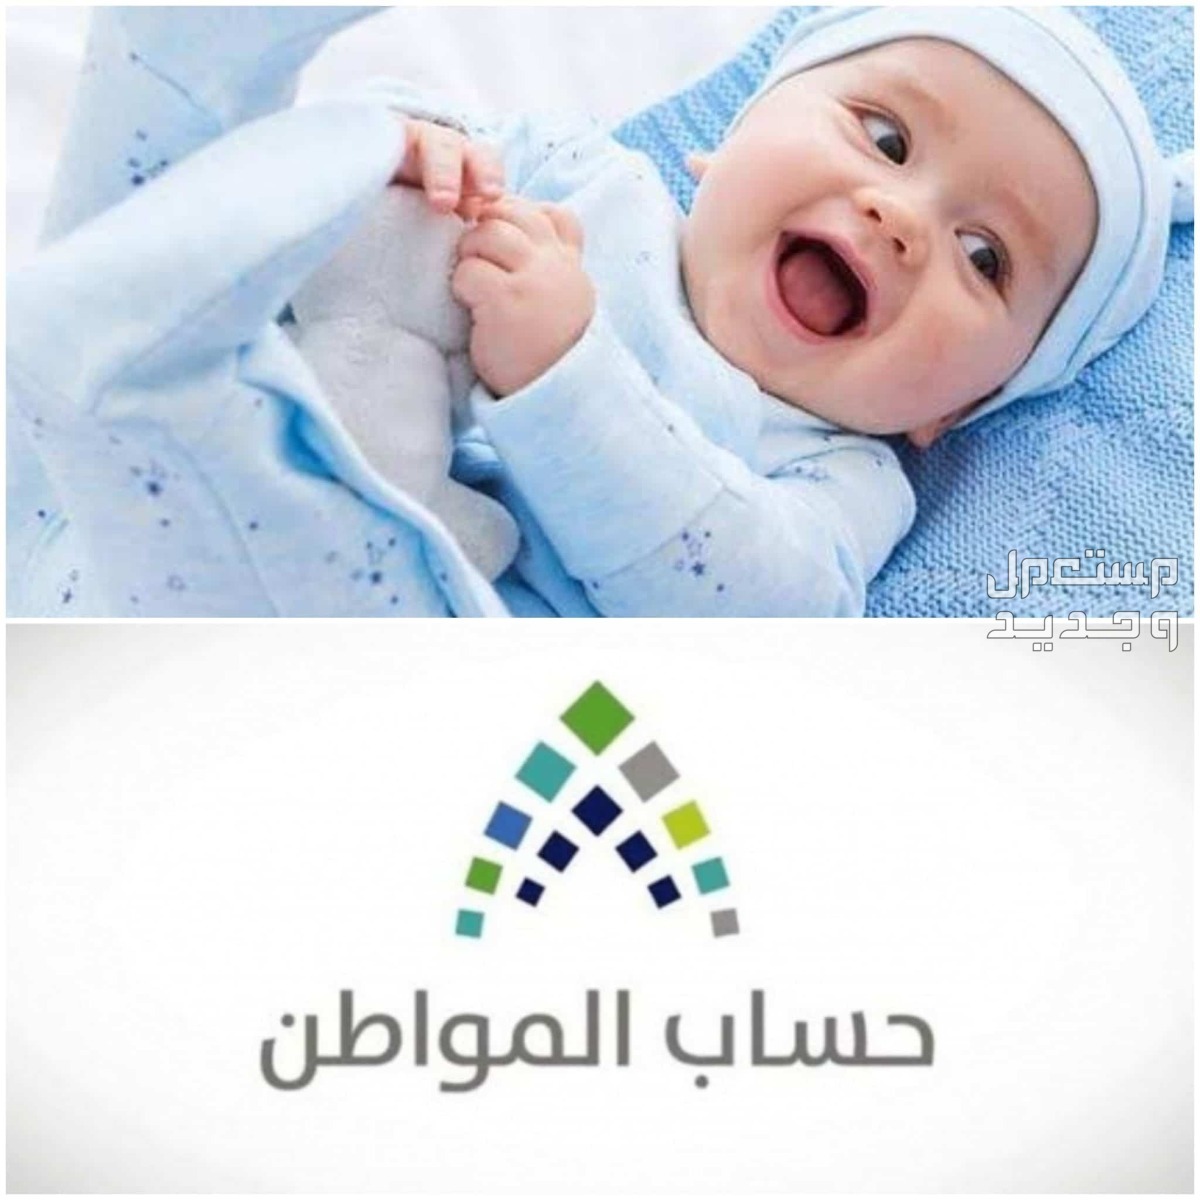 طريقة تسجيل المولود الجديد في حساب المواطن 1445 في سوريا تسجيل المولود الجديد في حساب المواطن